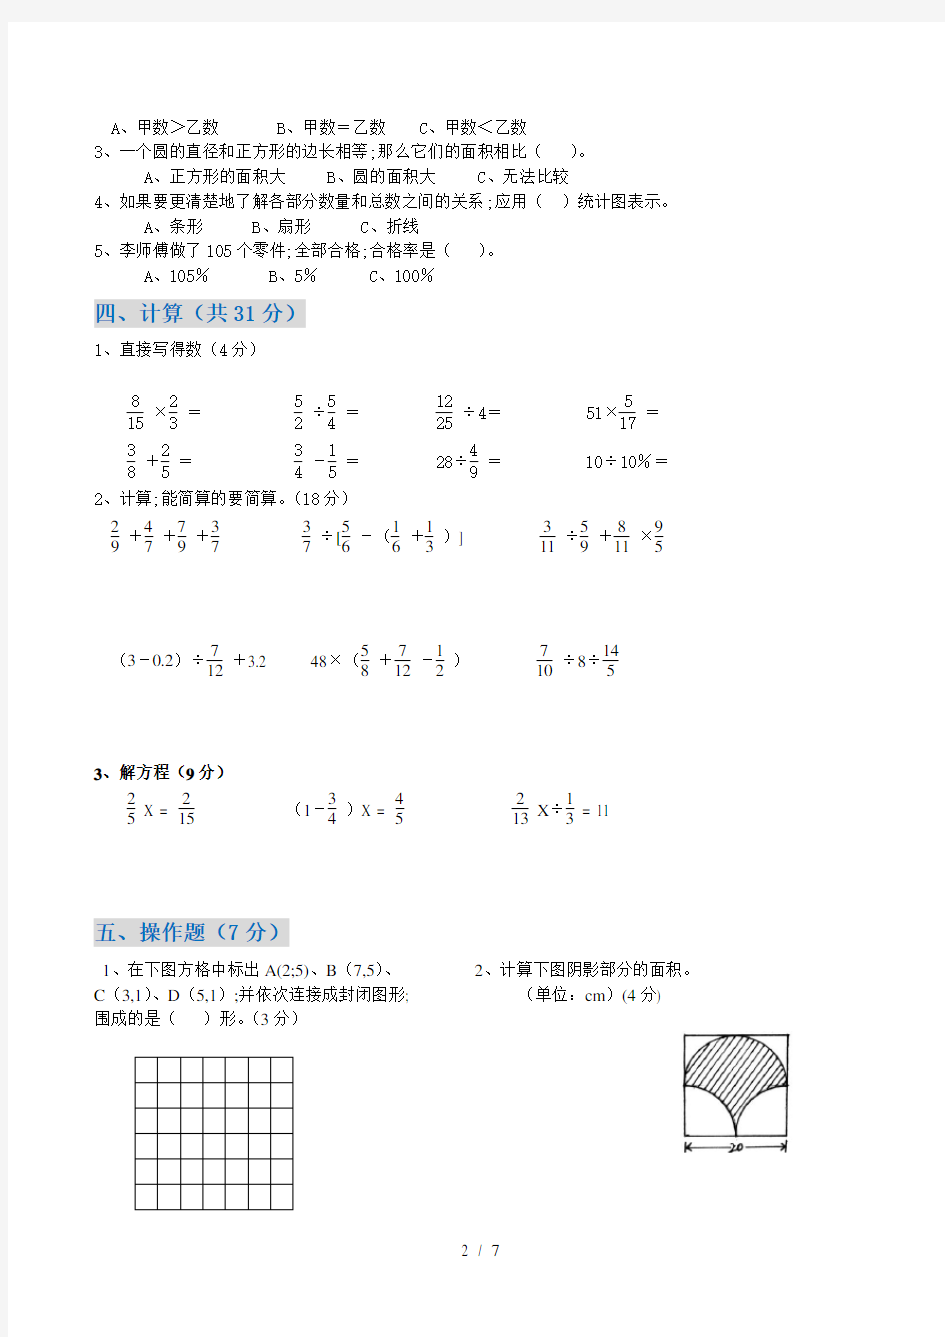 【小学数学】小学六年级上册数学期末试卷(附答题卡)